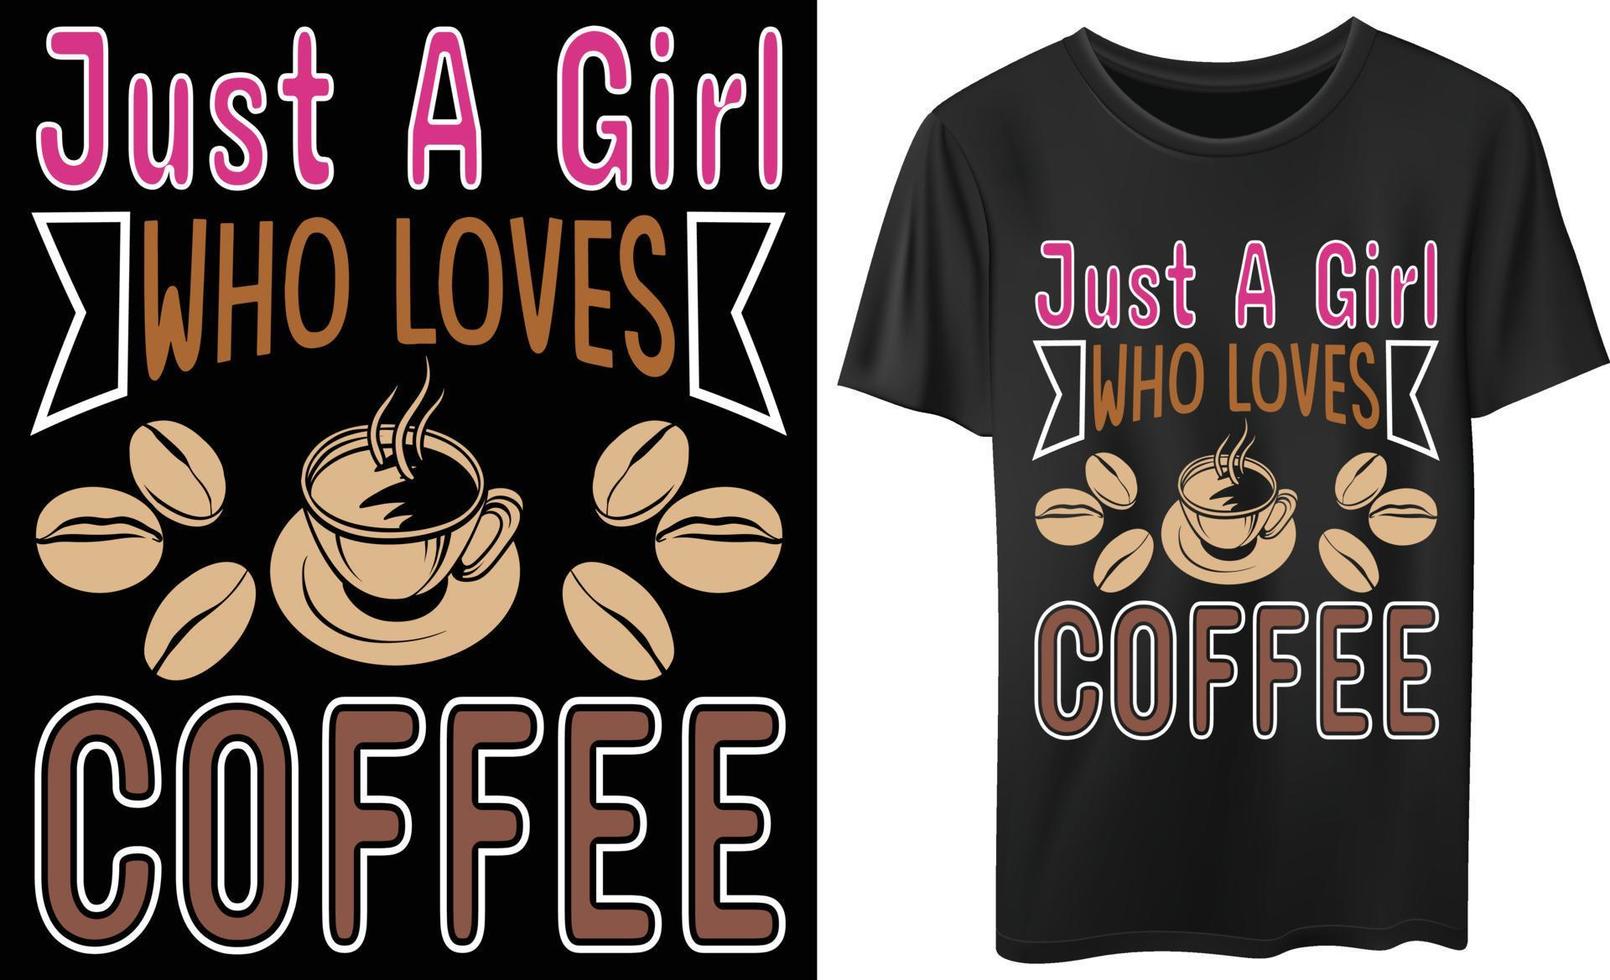 solo una ragazza che ama il caffè per il design della maglietta vettoriale degli amanti del caffè